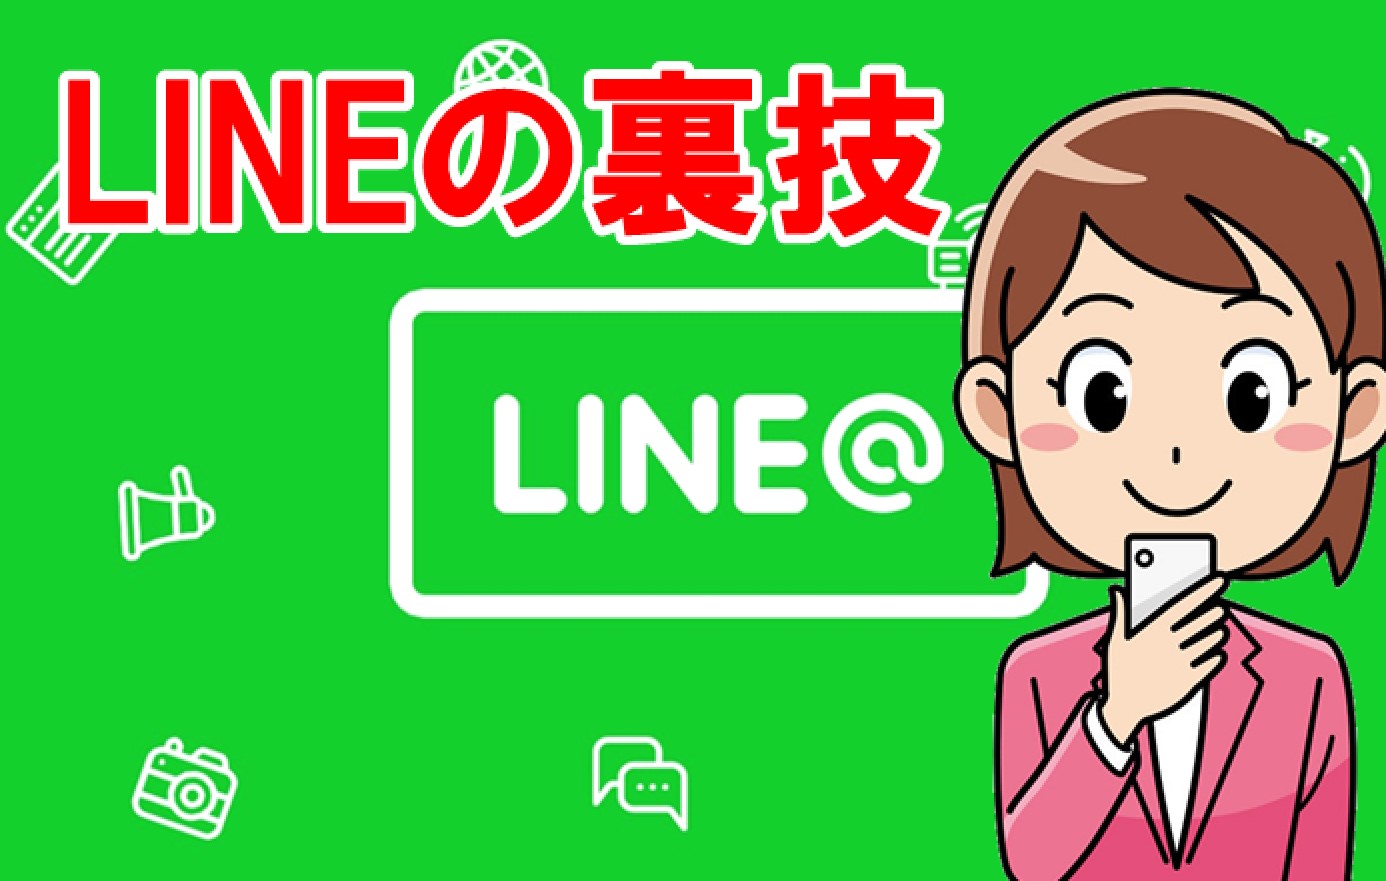 LINE m[g ^CC